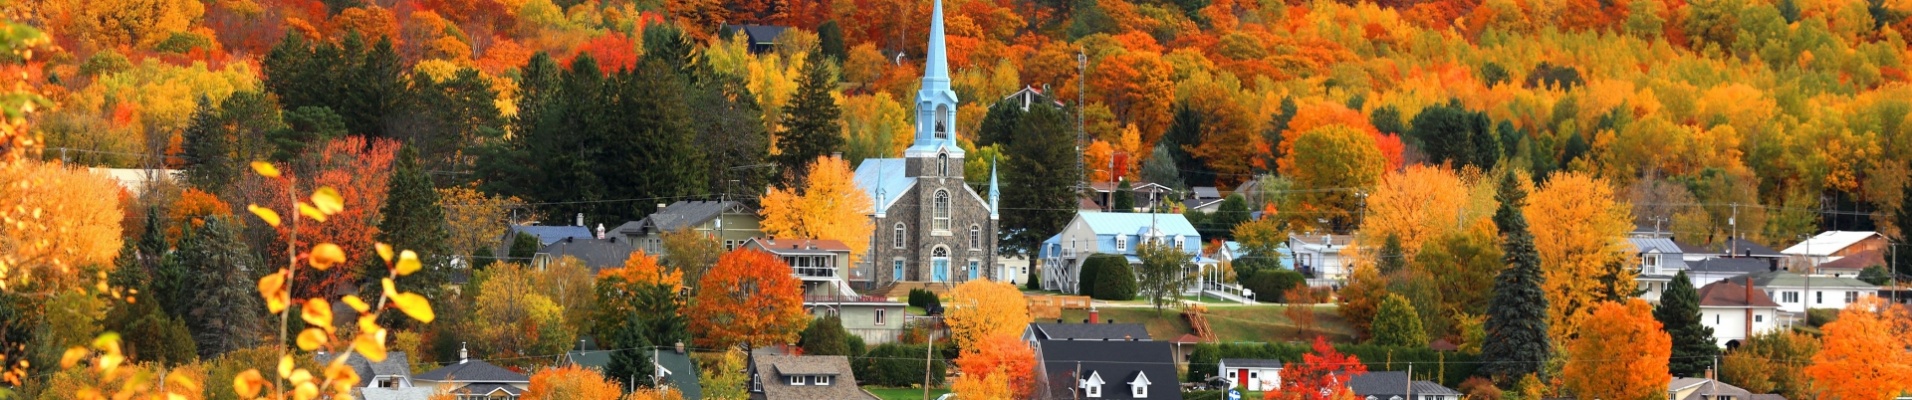 village-grandes-piles-couleurs-automne-canada